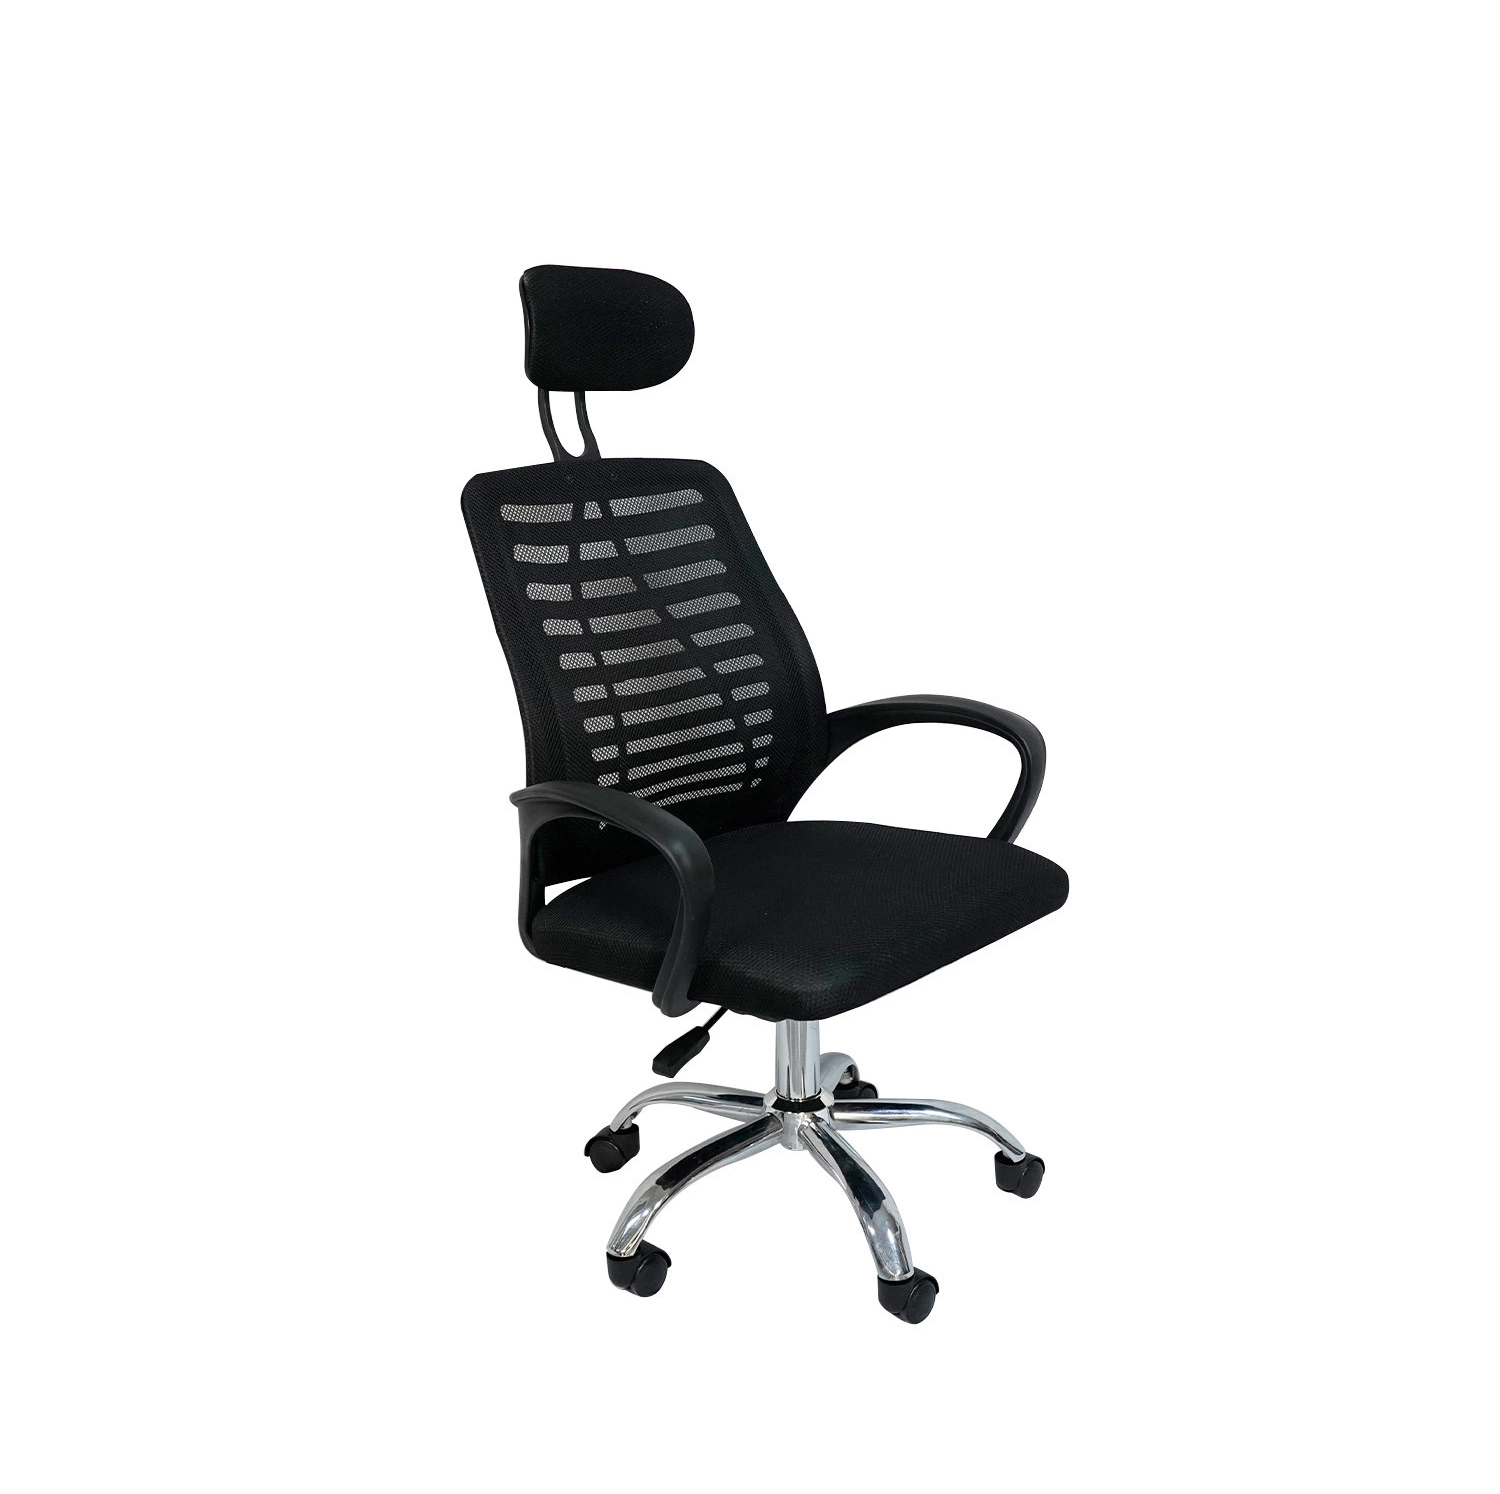 Vente en gros mobilier d'intérieur moderne chaise de bureau ergonomique pivotante réglable Chaises de jeux